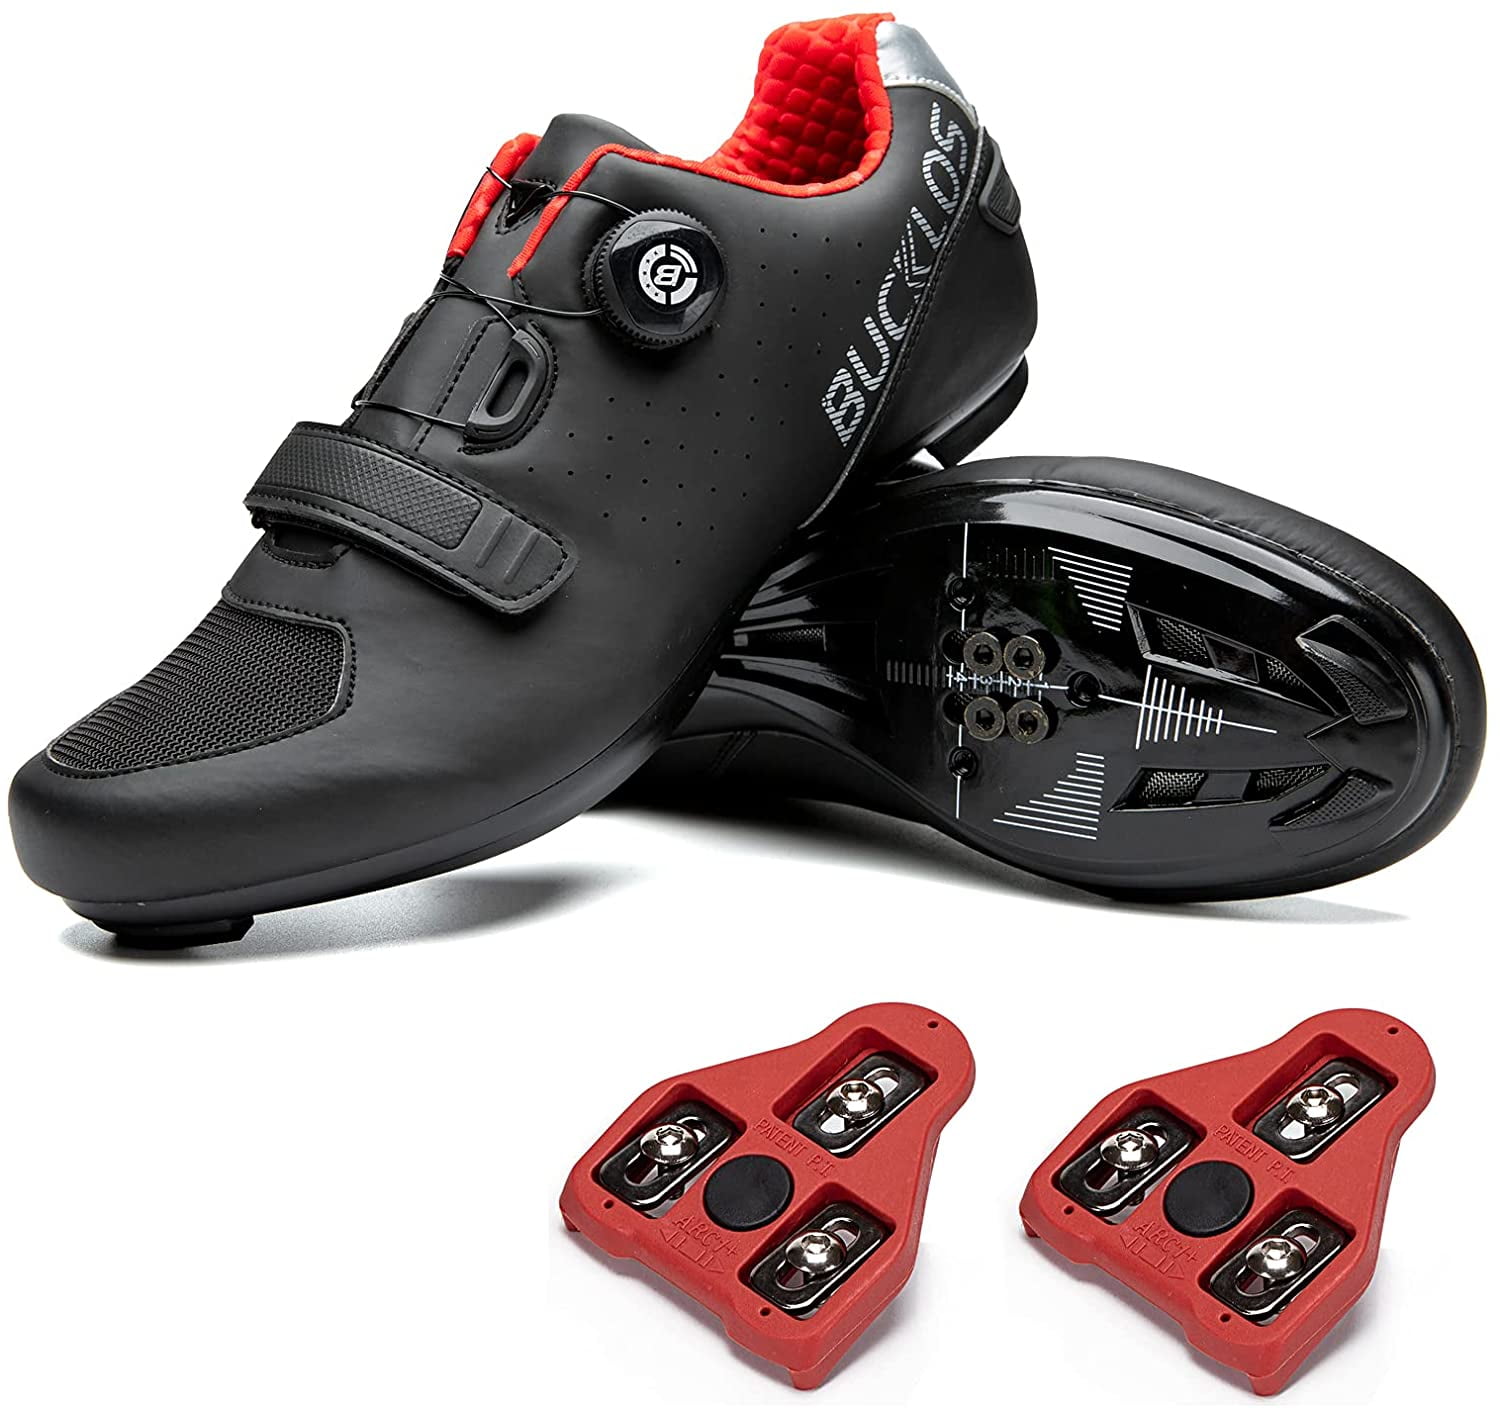 Deluxe Road Bike Shoes Cycling Nylon Sole Sneaker Fits Look/SPD Cleats Gear 